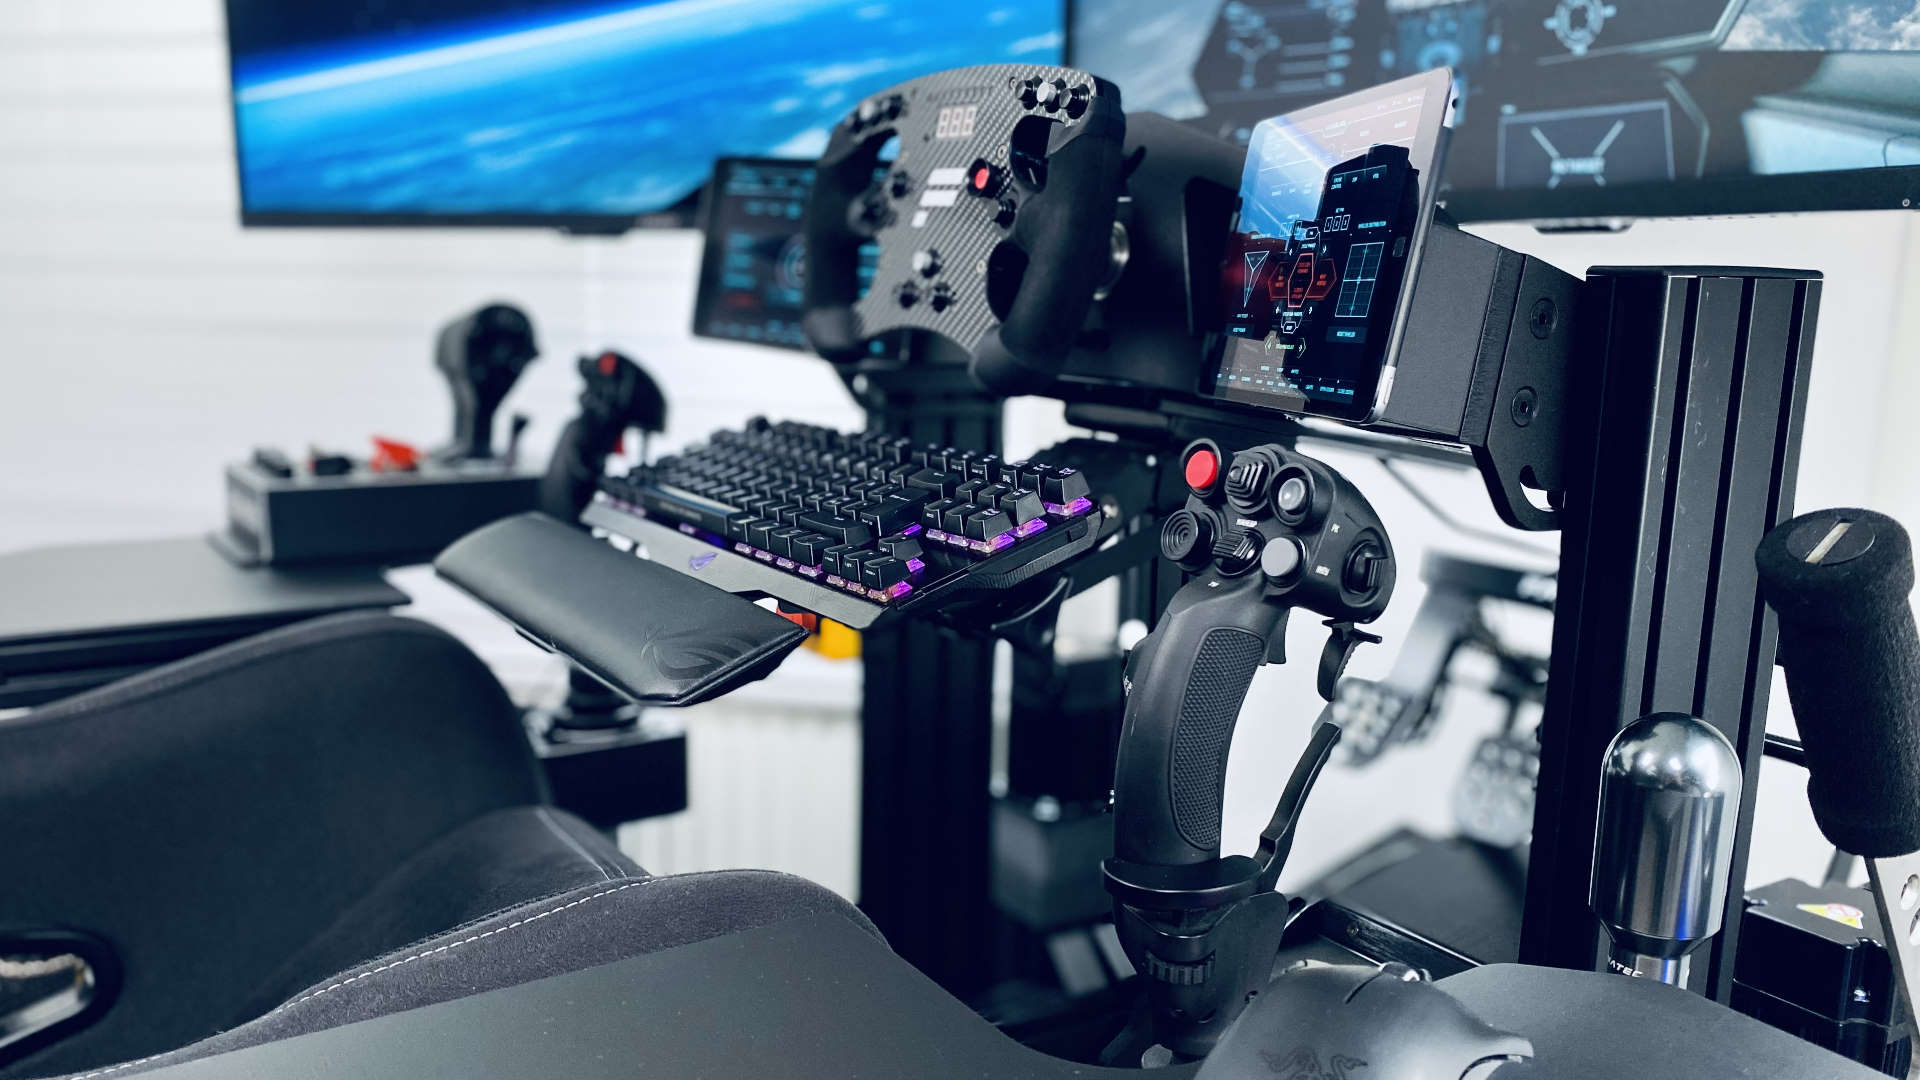 flight simulator rig